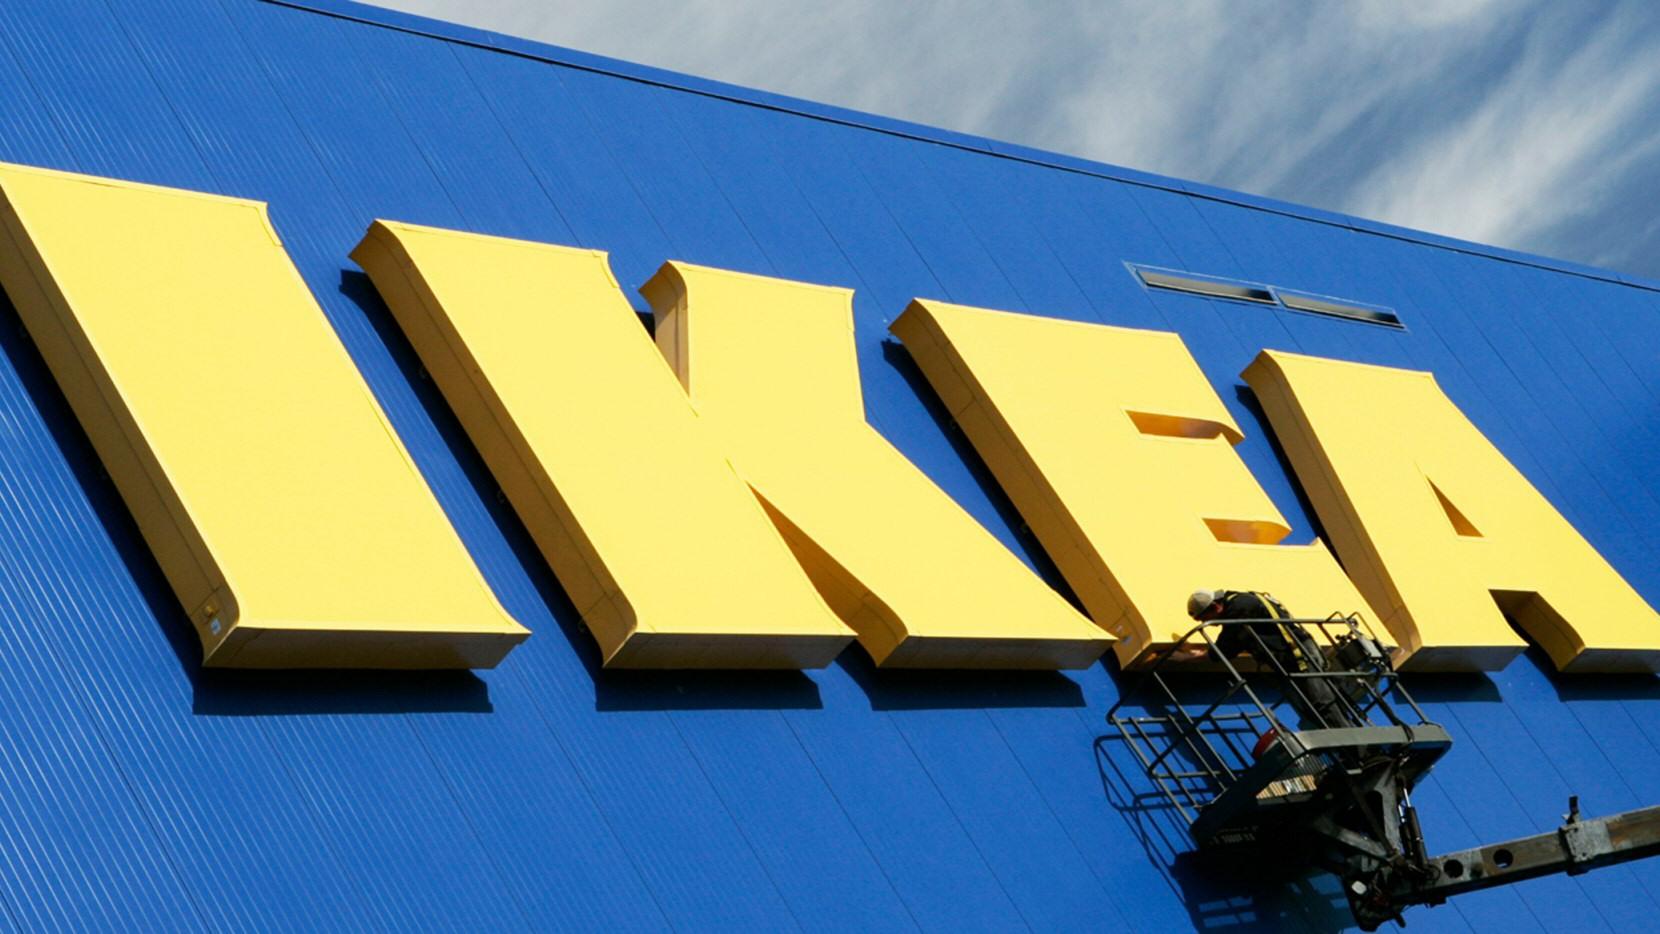 Nå har det blitt dyrere å handle på Ikea